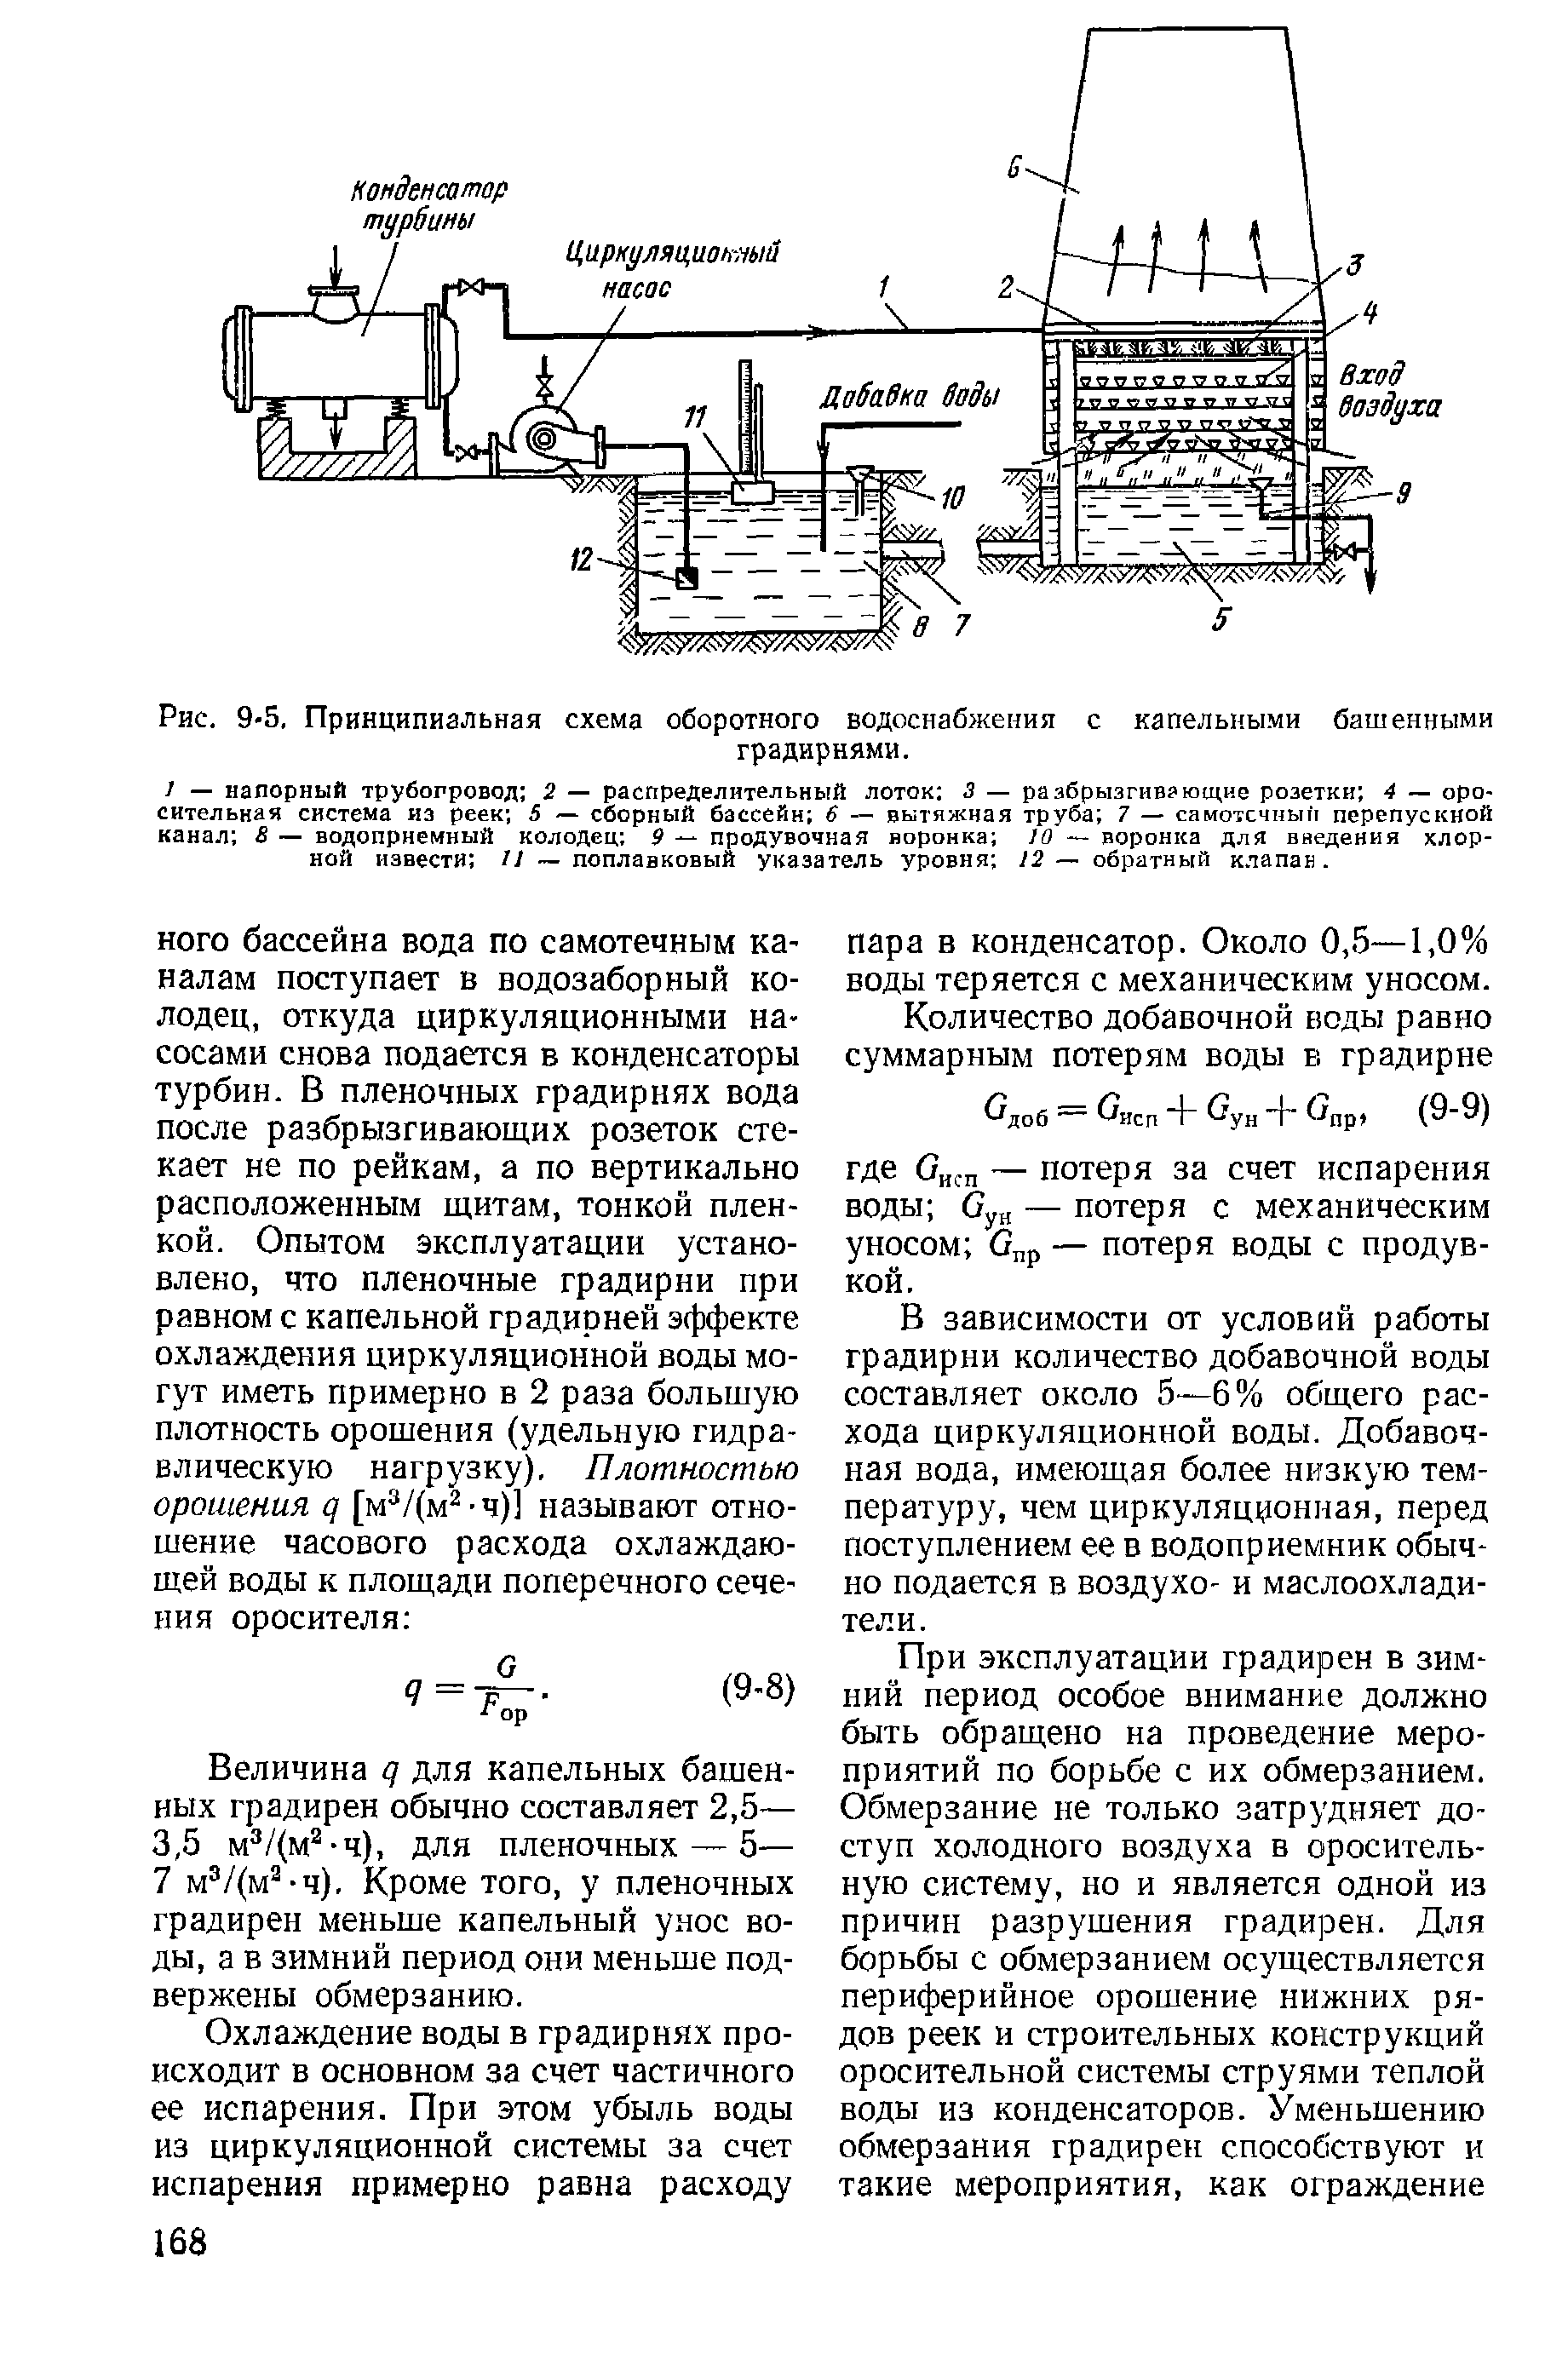 Рис. 9-5, Принципиальная схема оборотного водоснабжения с капельными башенными
